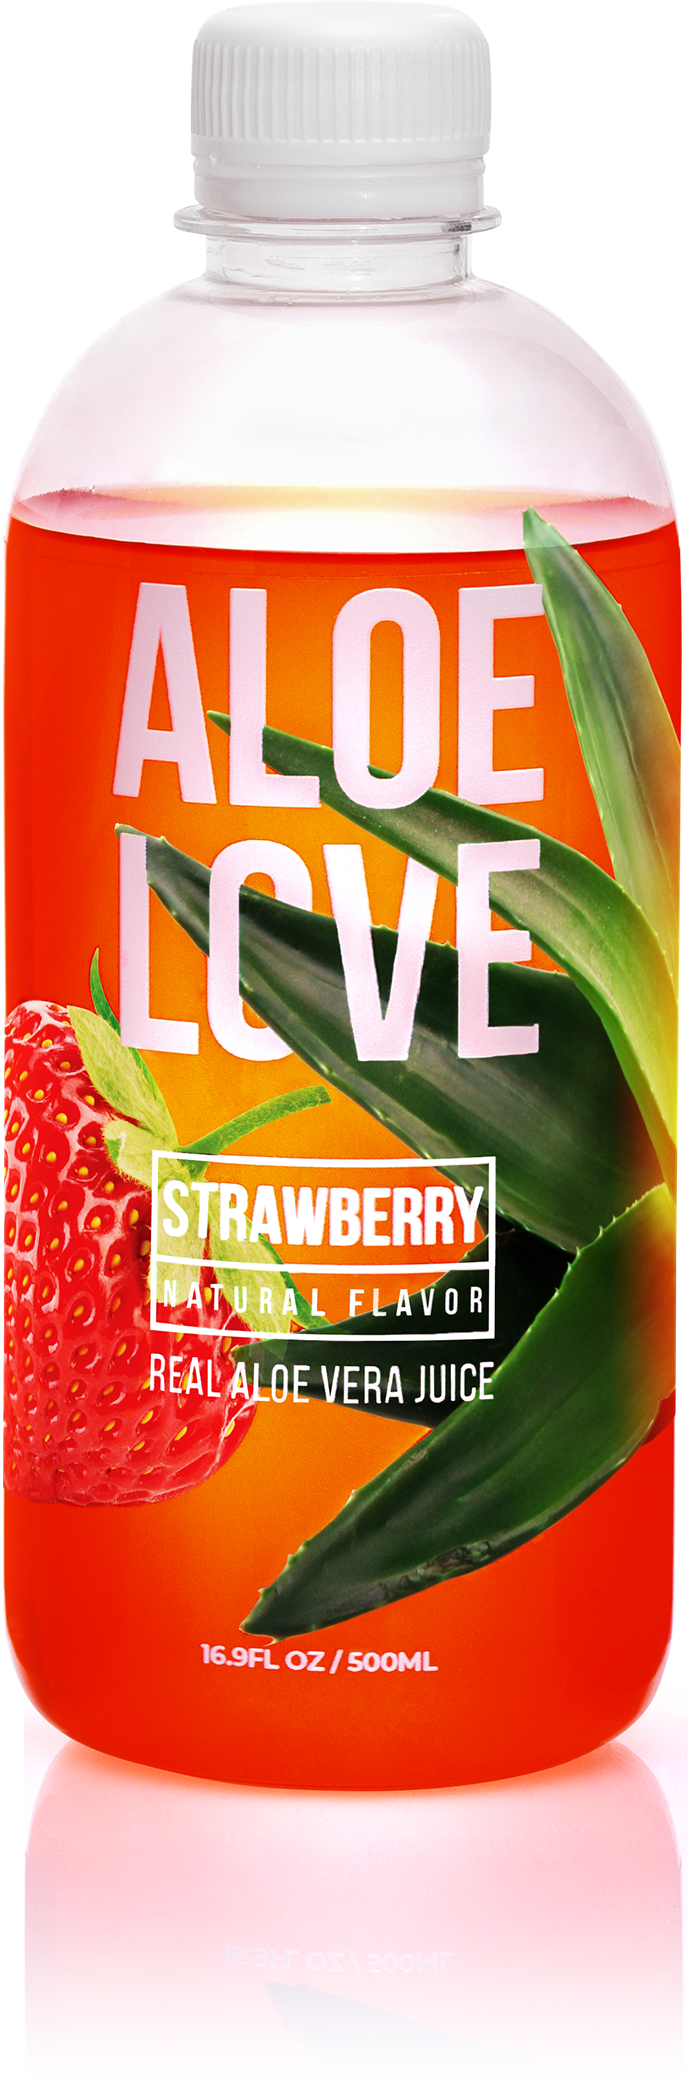 Aloe Love